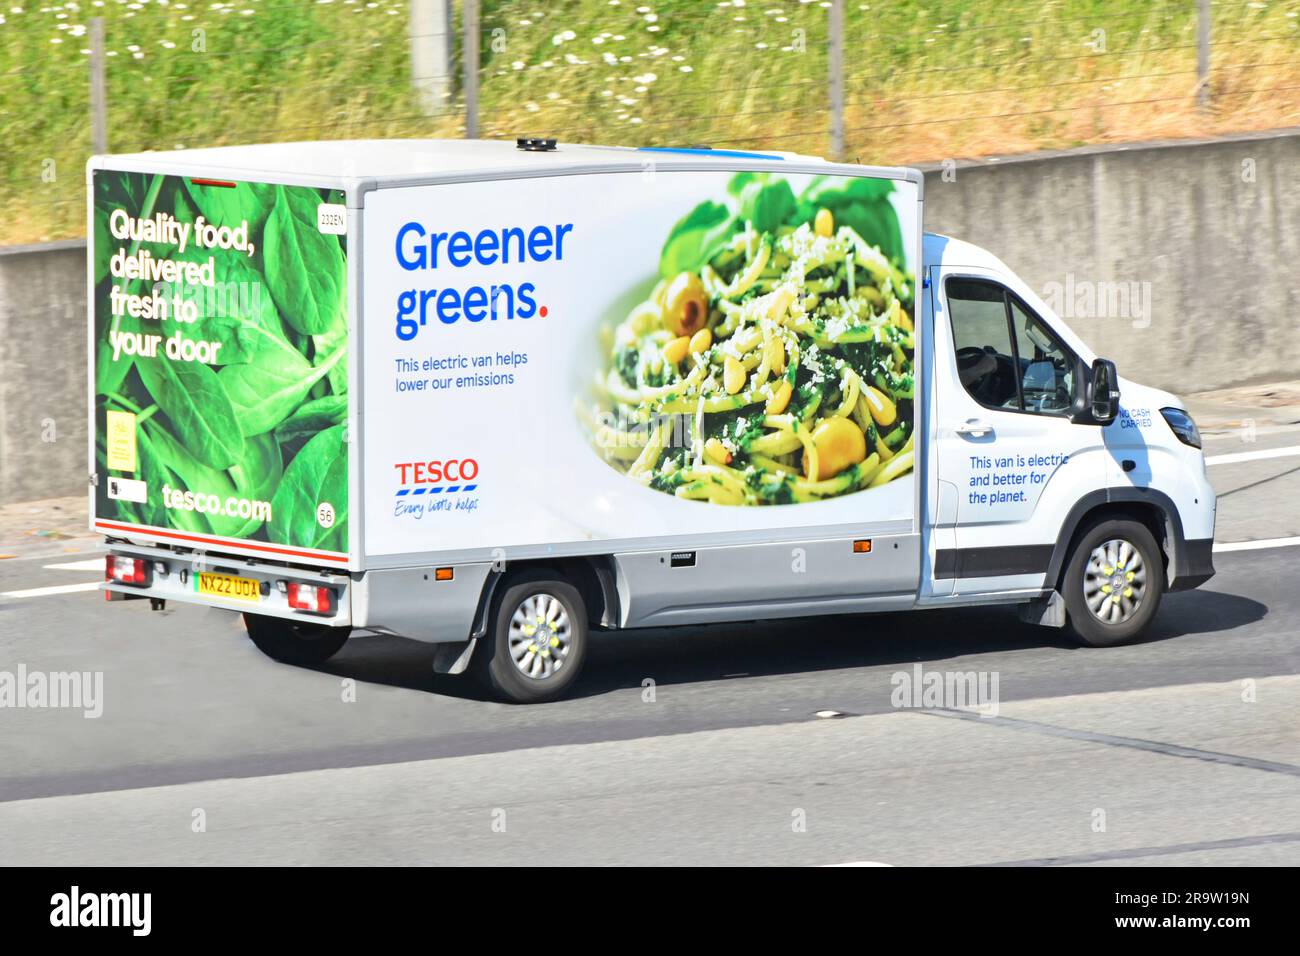 Alimentation électrique Tesco supermarché chaîne d'approvisionnement alimentaire commerce de détail livraison de la commande d'épicerie en ligne par la conduite en minibus sur M25 autoroute route Royaume-Uni Banque D'Images